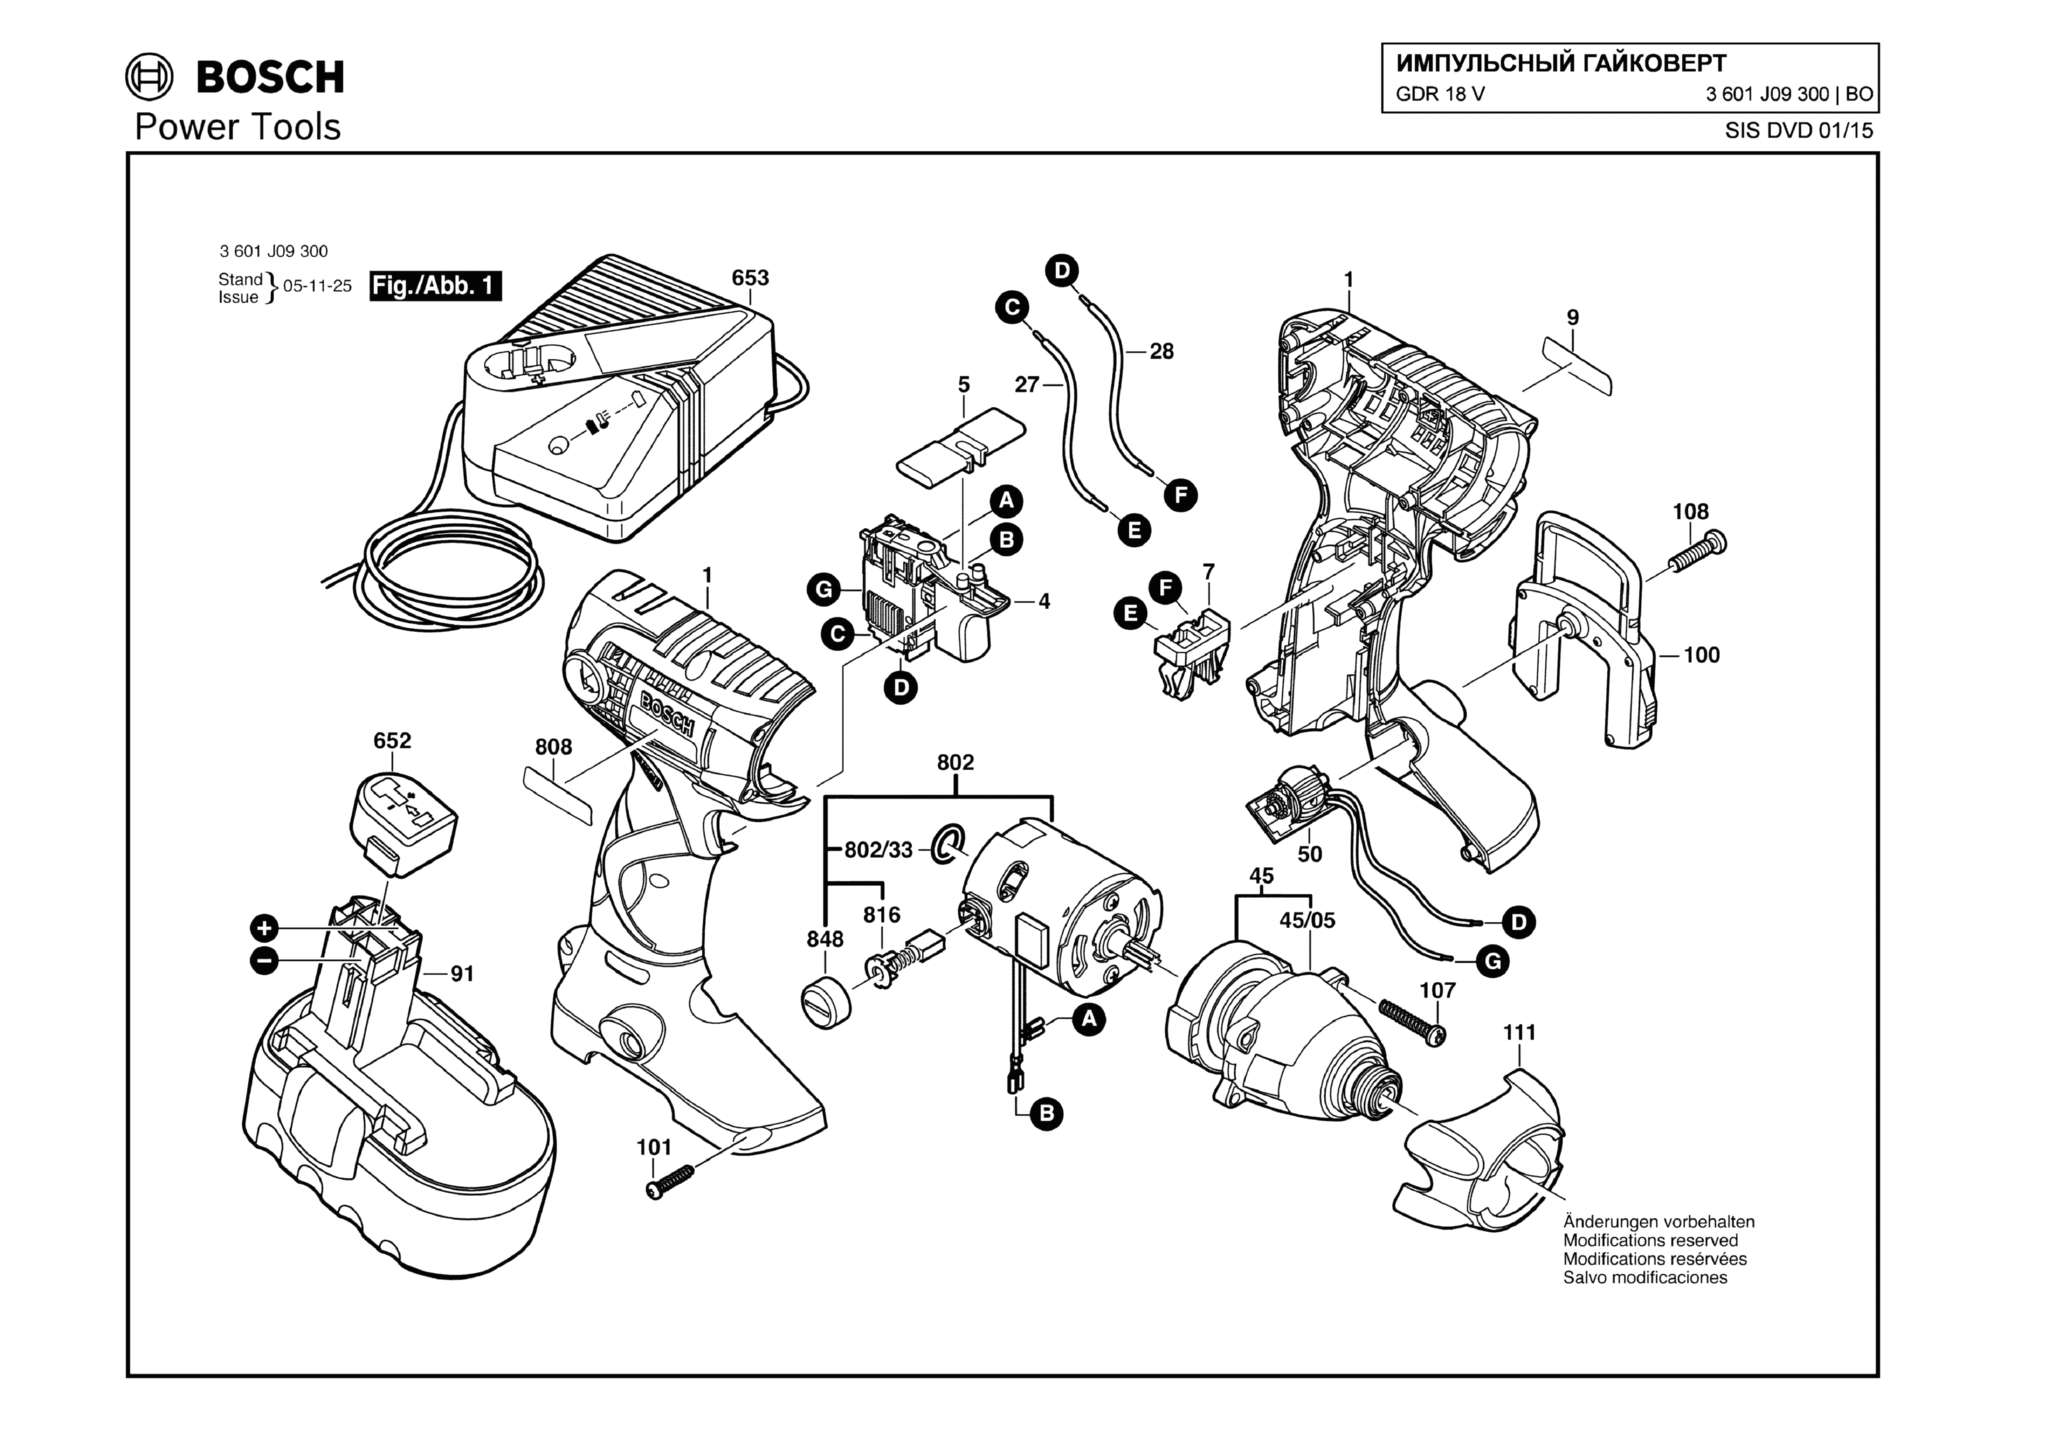 Запчасти, схема и деталировка Bosch GDR 18 V (ТИП 3601J09300)